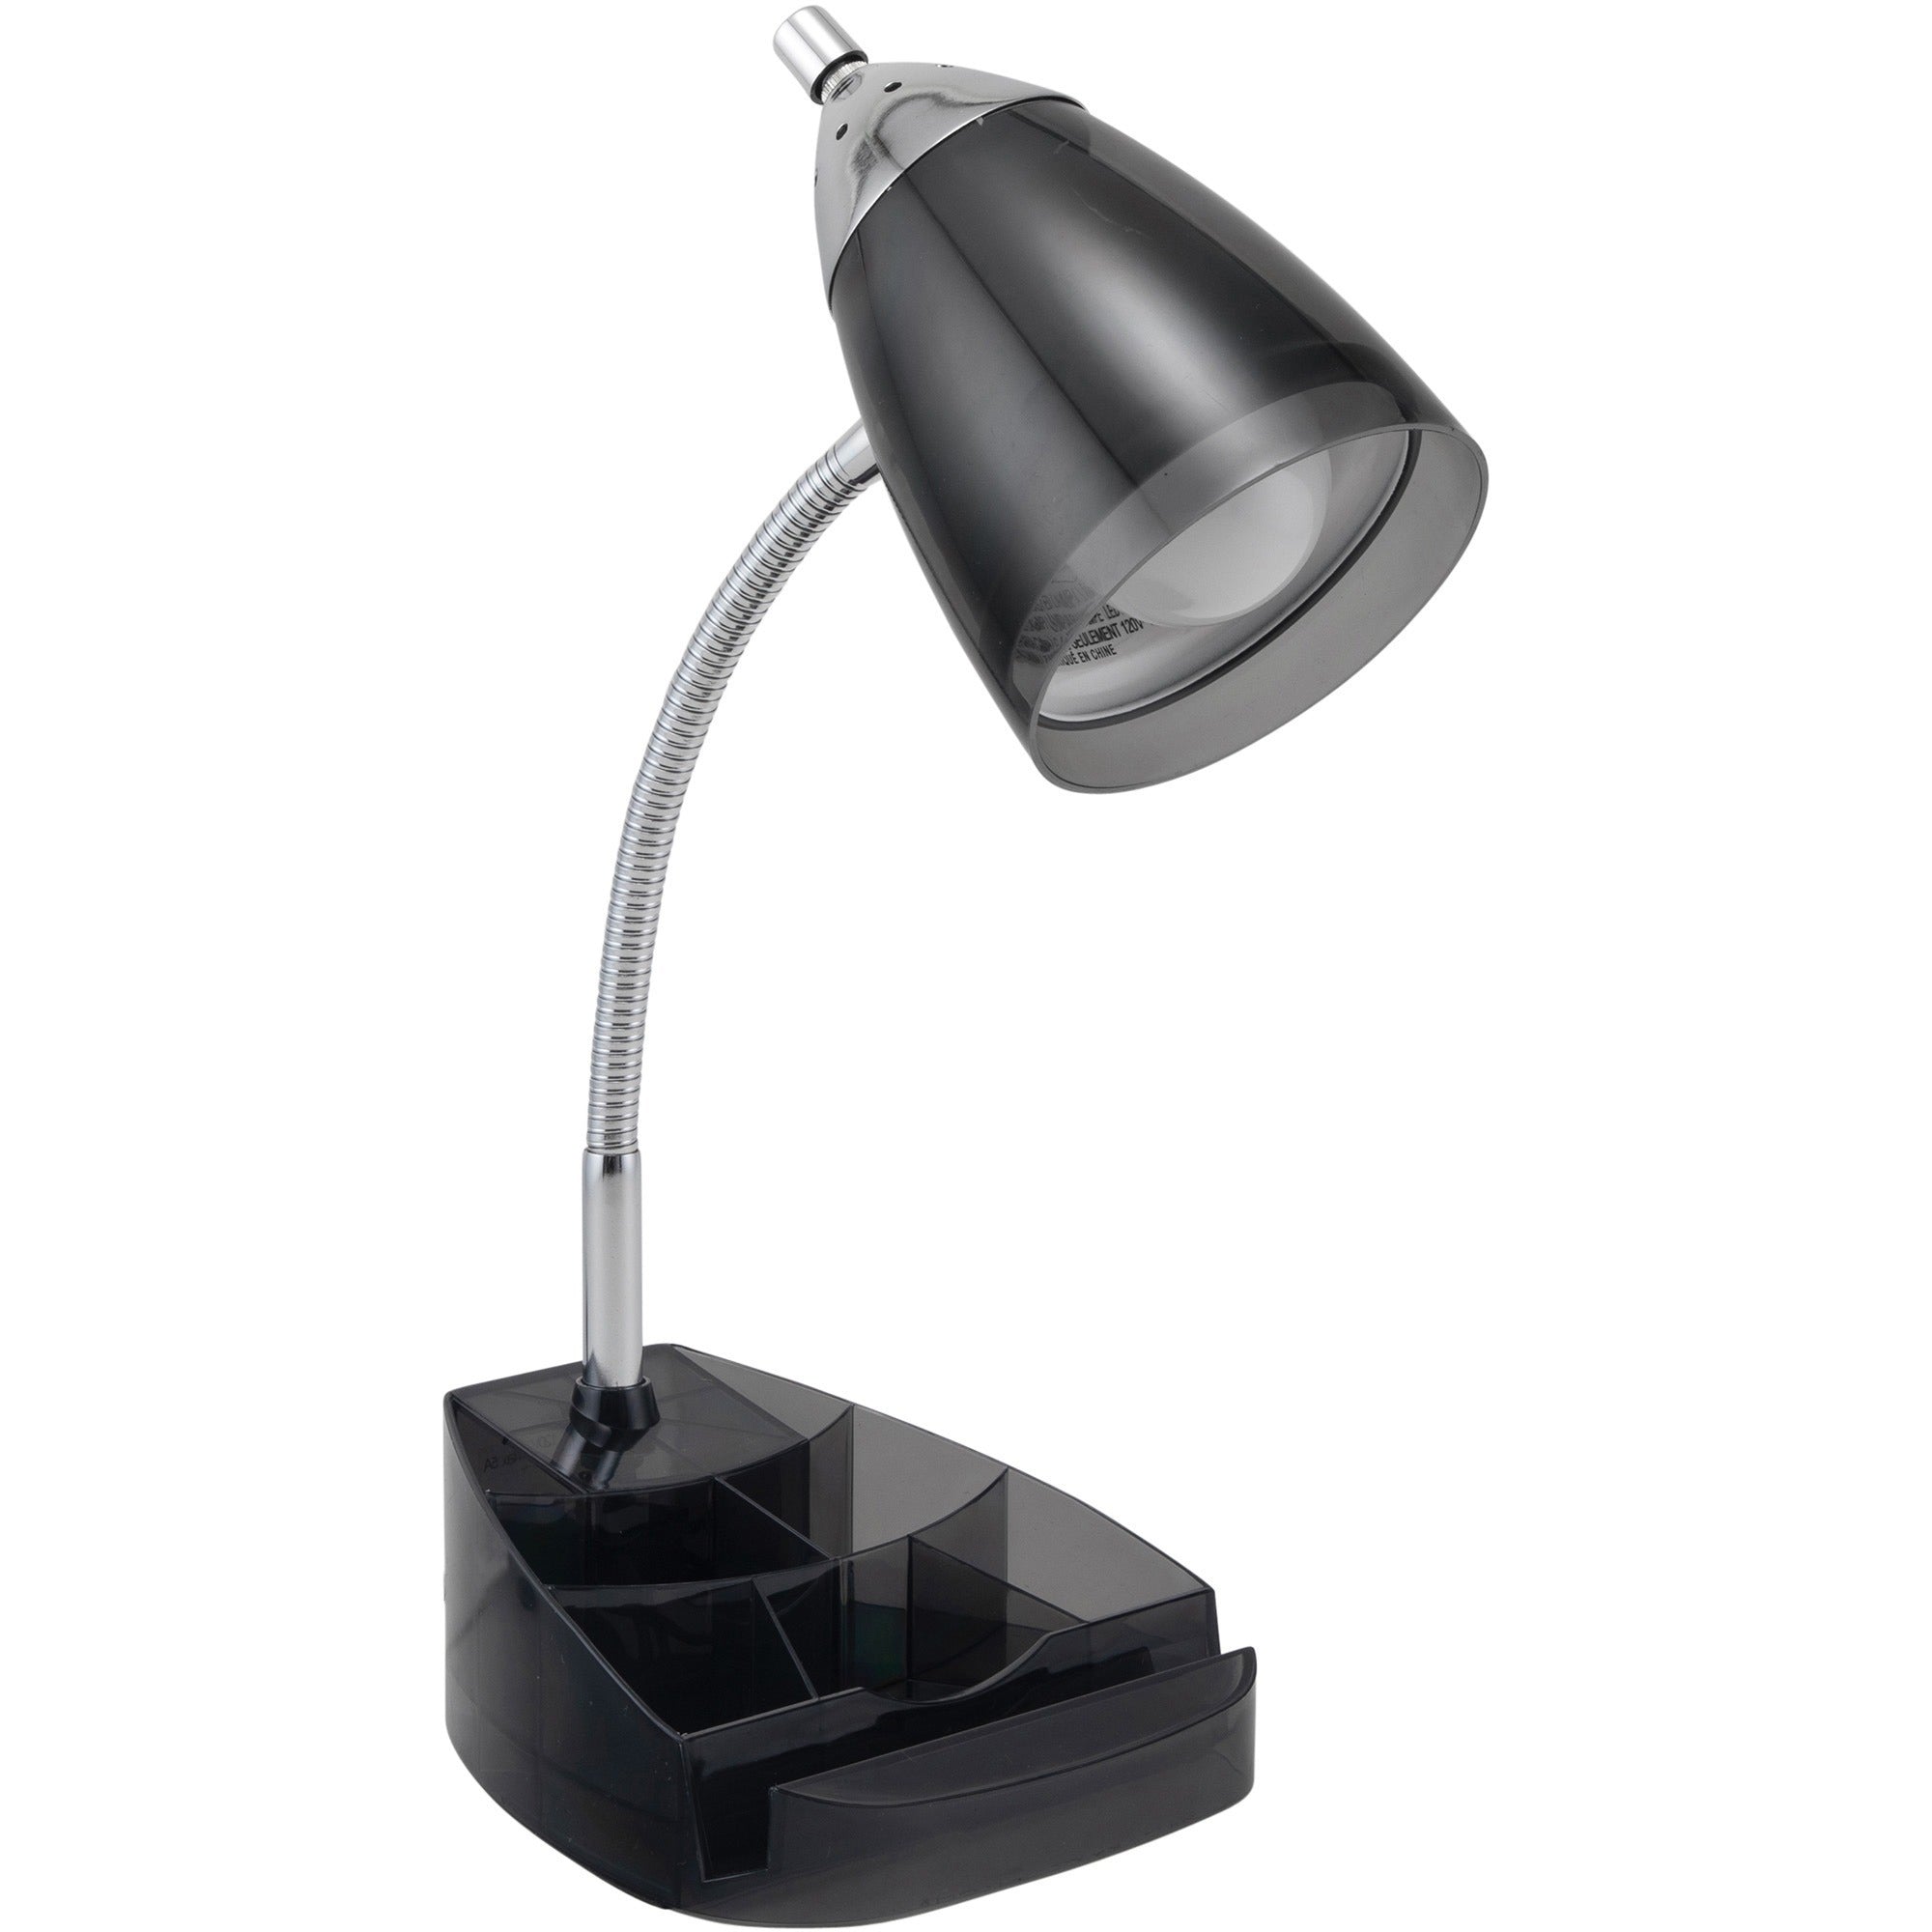 victory-light-v-light-organizer-desk-lamp-10-w-led-bulb-chrome-flexible-arm-desk-mountable-black-chrome-translucent-for-desk-tablet-phone_vlusvca2148104b - 1